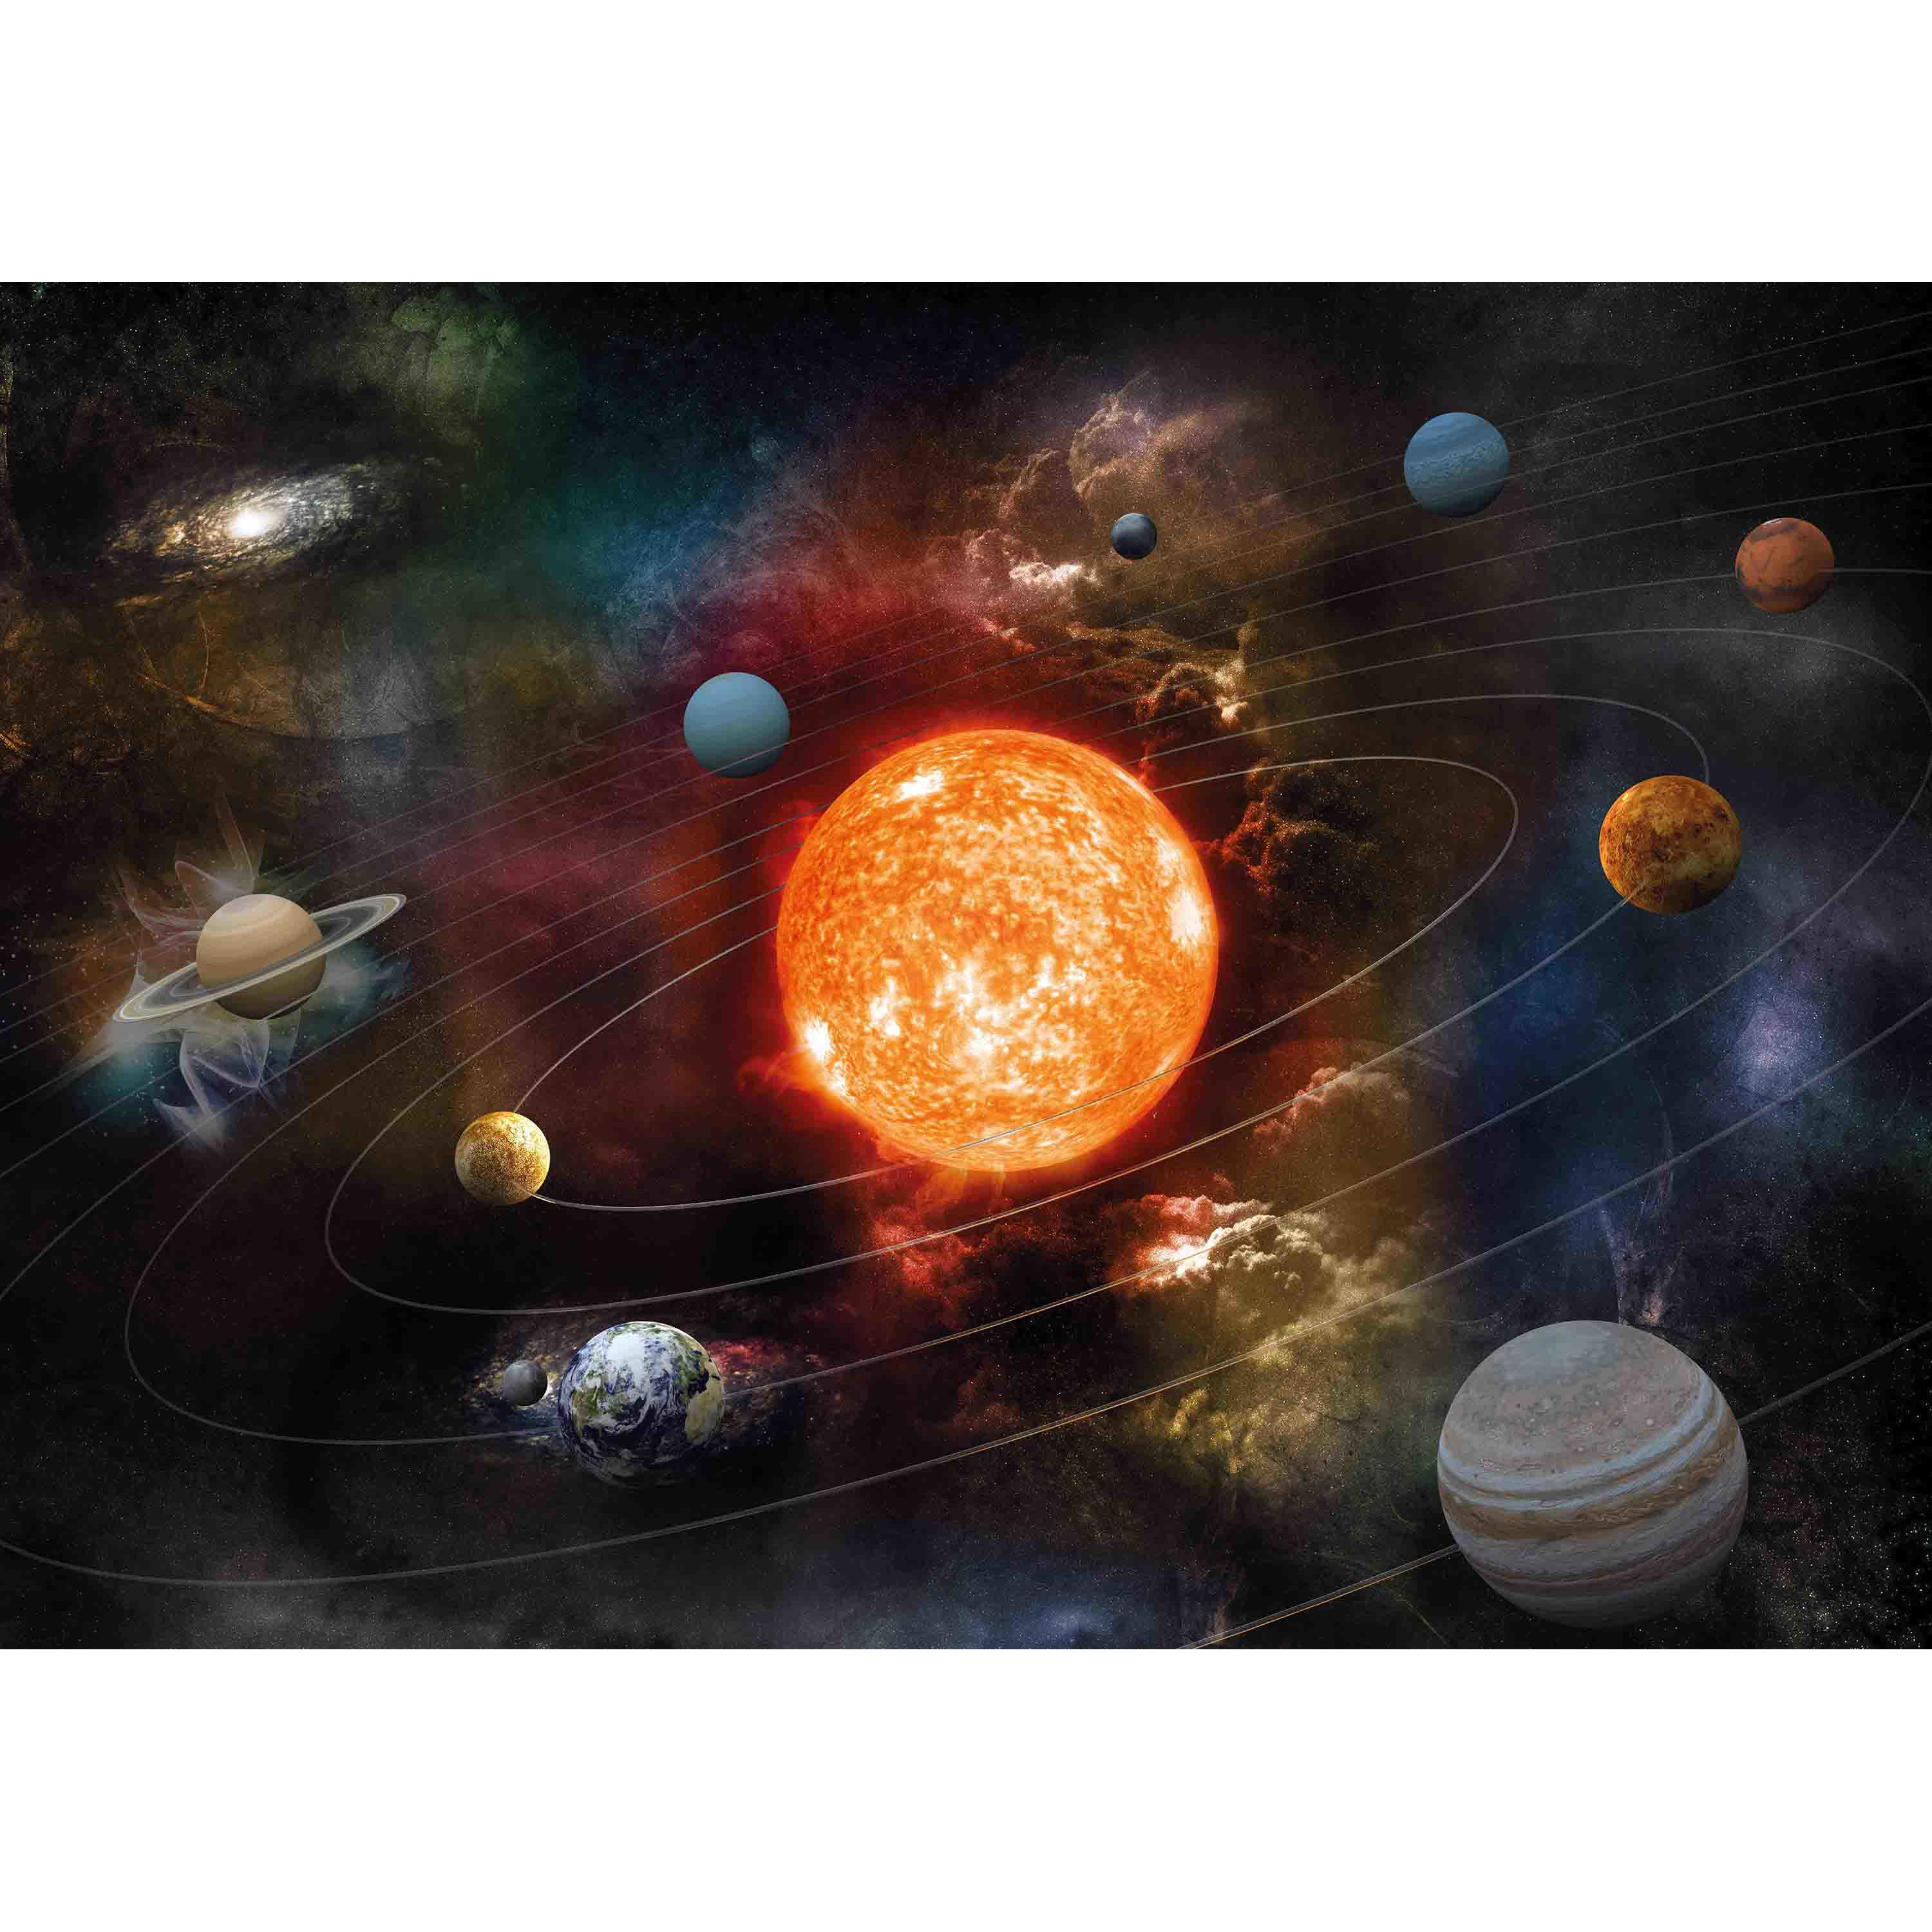 3x Posters van planeten in zonnestelsel-Melkweg voor op kinderkamer-school 84 x 59 cm